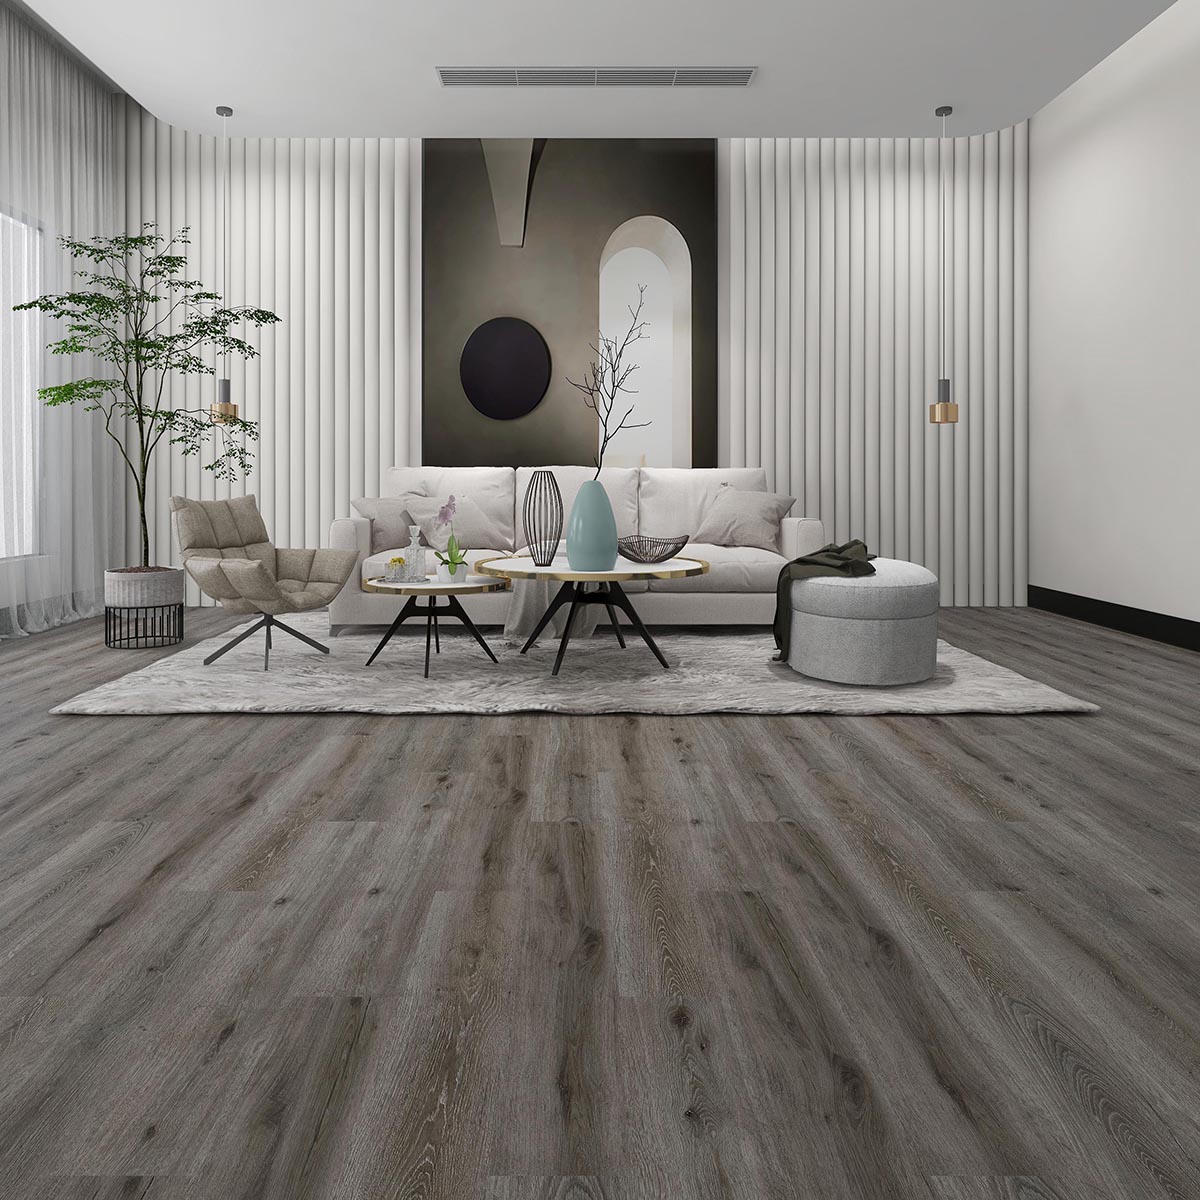 New Arrival China Spc Floor Tiles -
 Libra SPC Click Flooring – TopJoy